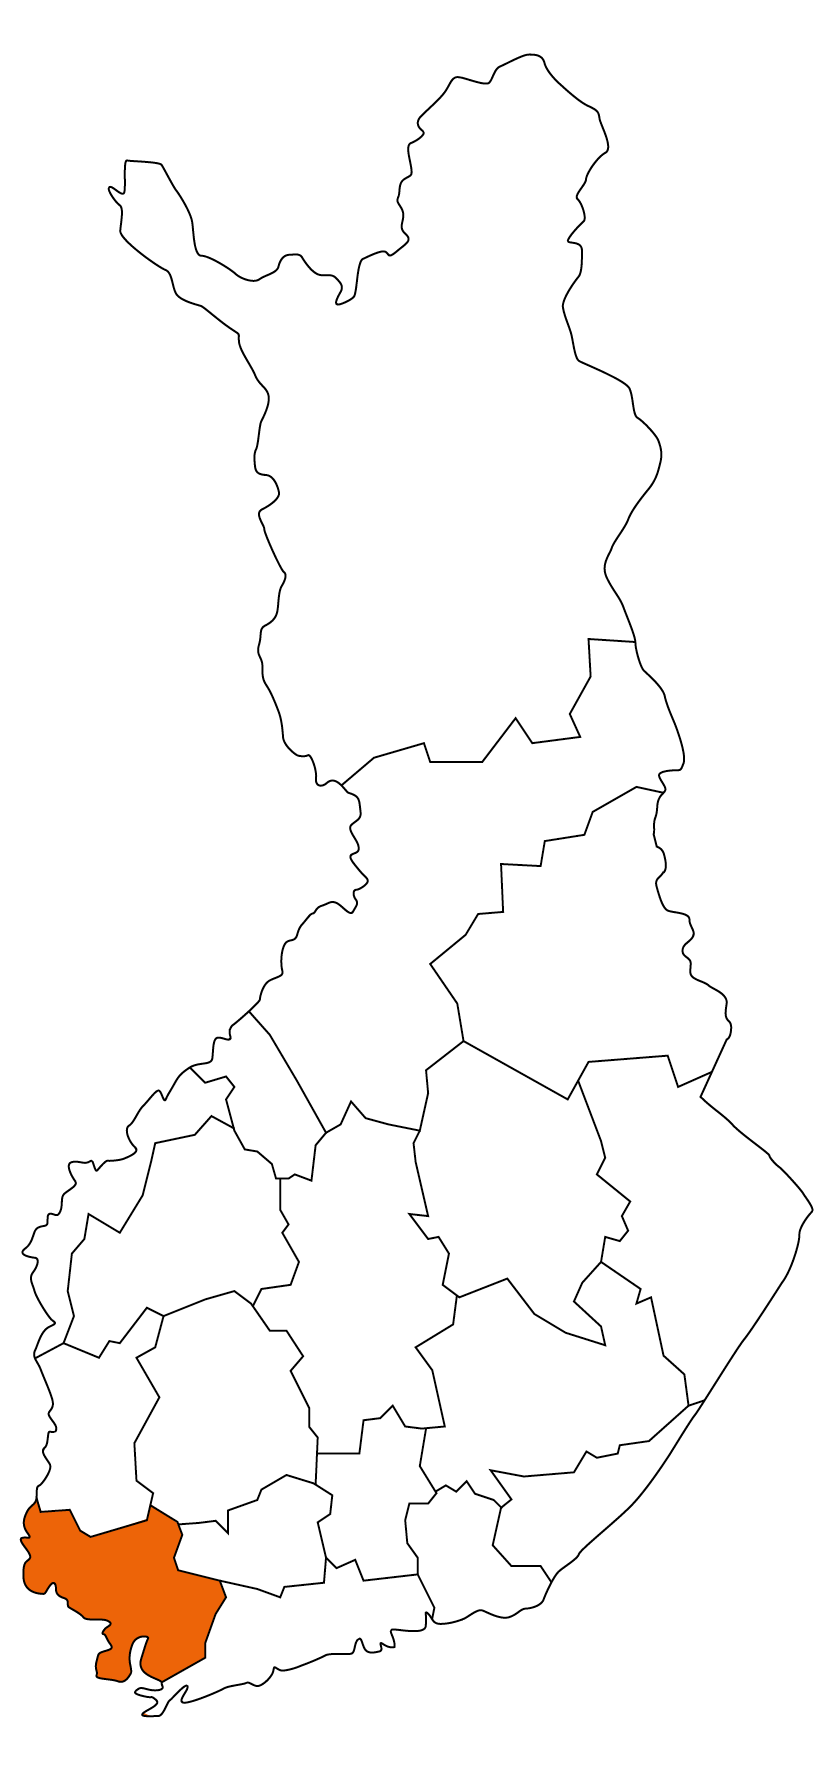 Varsinais-Suomi